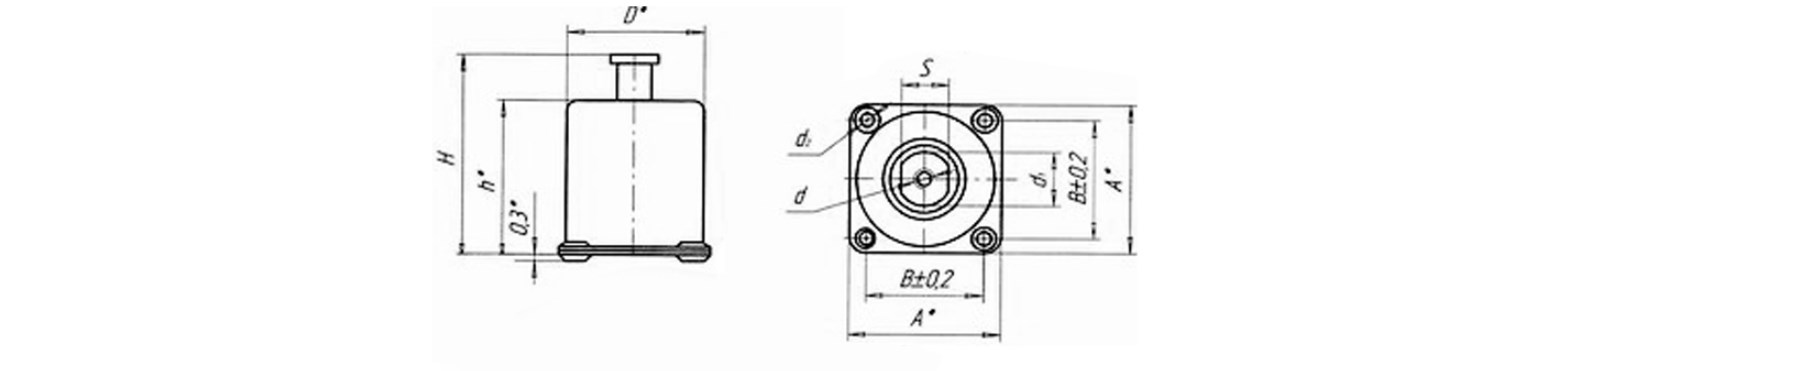 Схема габаритных размеров опорного амортизатора АФД-4